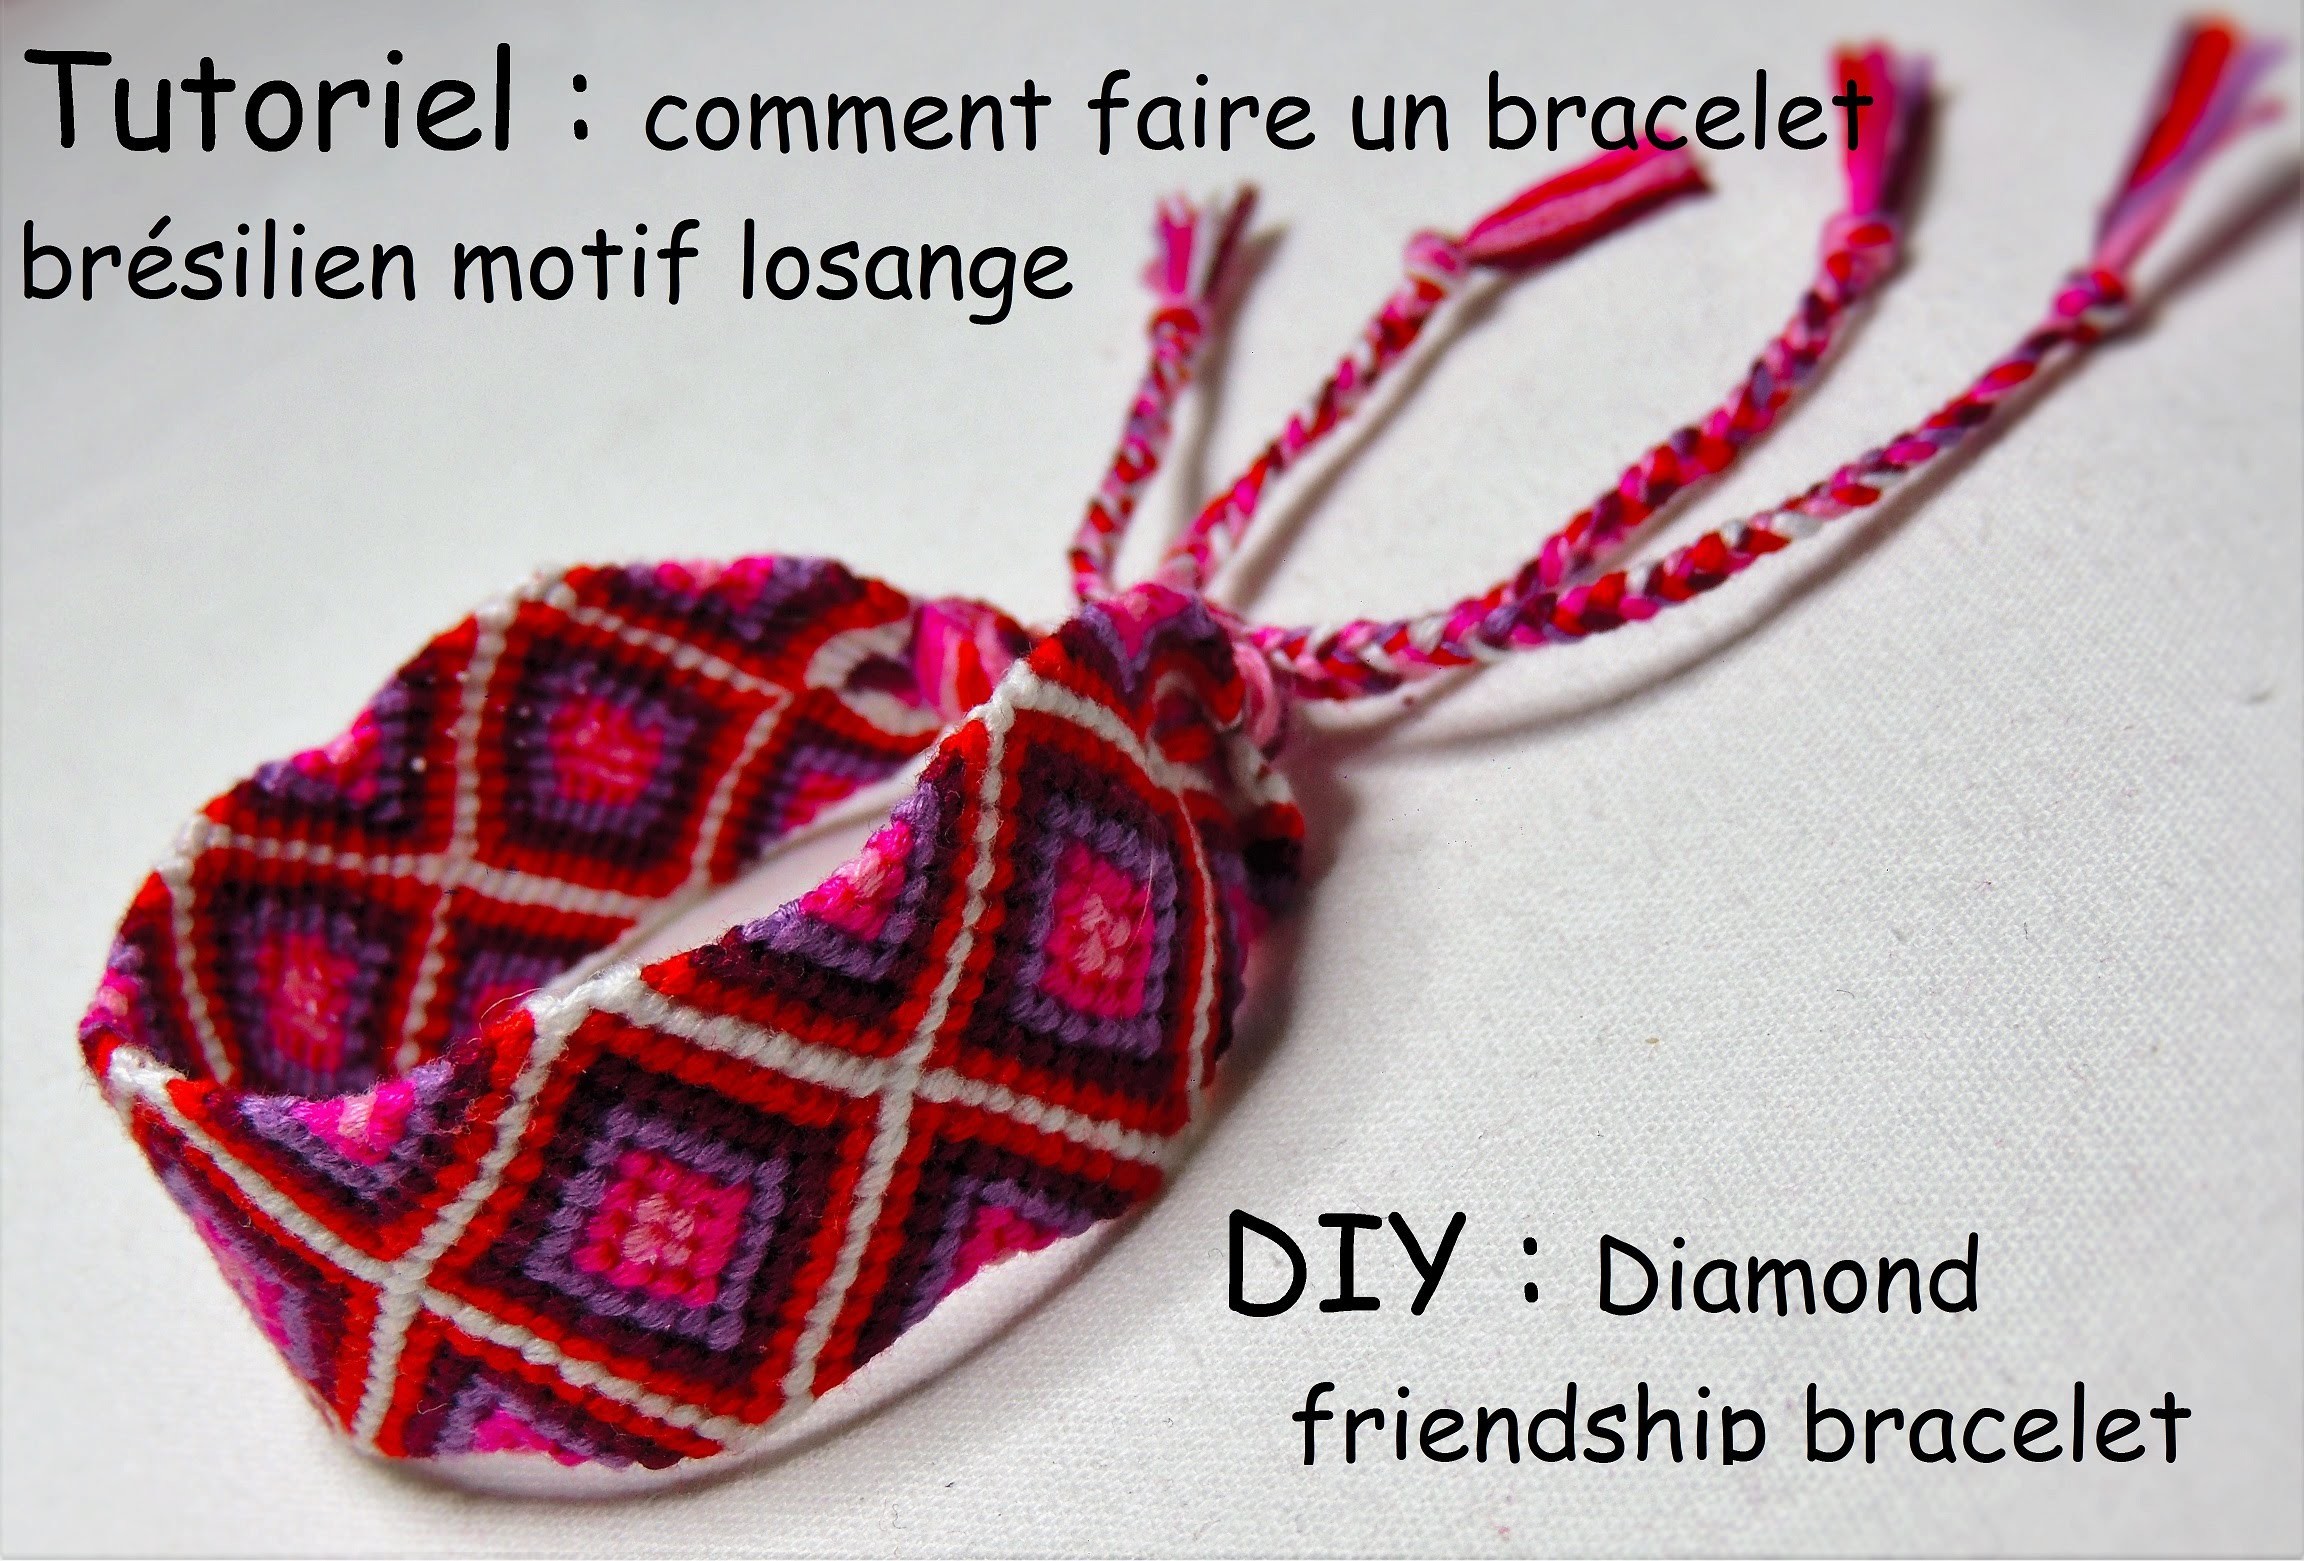 Comment faire un bracelet brésilien losange (DIY diamond friendship bracelet)